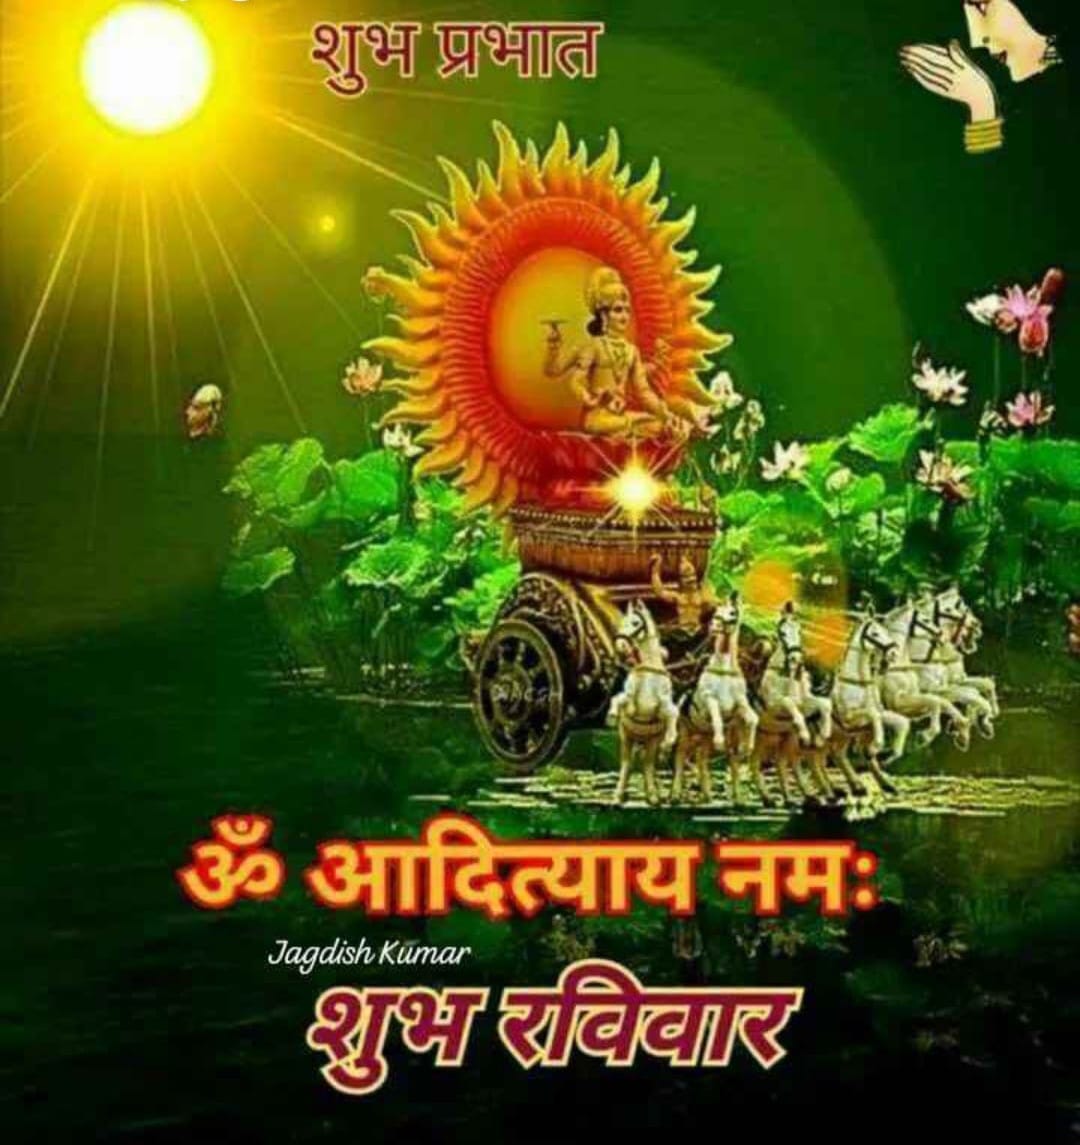 #शुभ_रविवार🔆 सूर्य देव की कृपा से आप सभी का दिन शुभ एवं मंगलमय हो 🙏 *खुशी की खोज में निरंतर बने रहें, क्योंकि यह हमारे जीवन को सुंदर बनाता है________✍️* #जय_सूर्य_देव #जय_श्री_राम‌‌ 🙏🏻🙏🏻💐💐💐🙏🏻🙏🏻